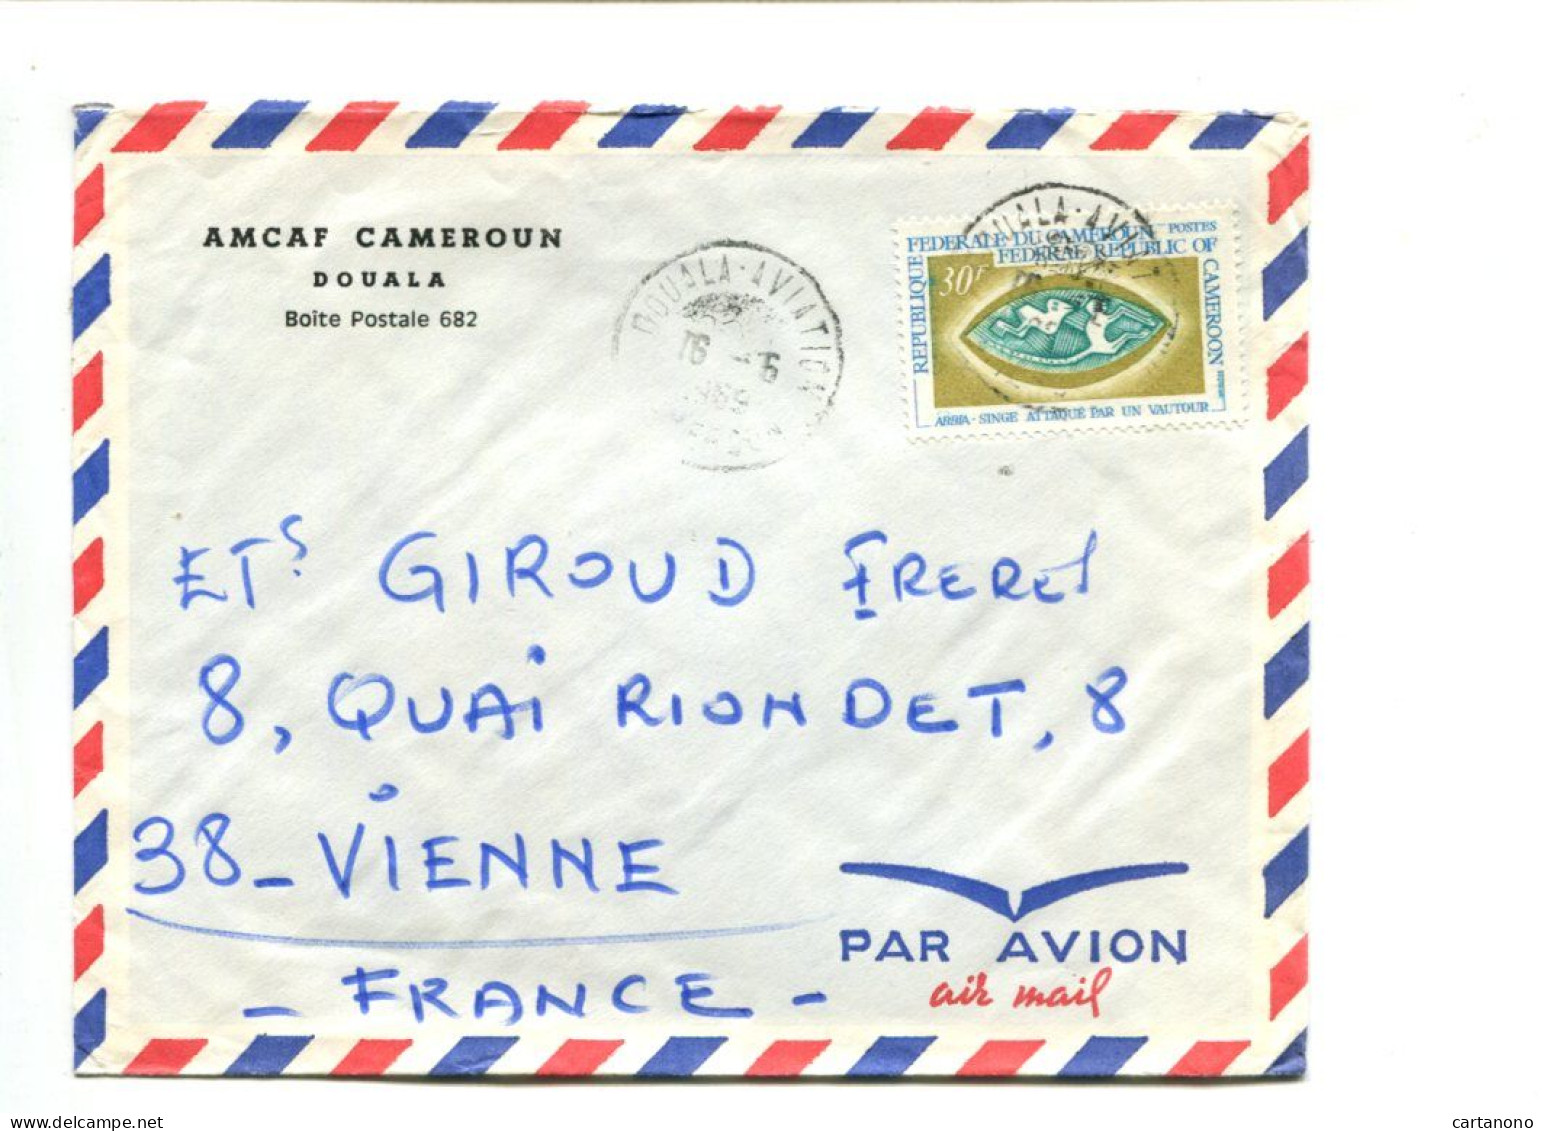 CAMEROUN - Affranchissement Sur Lettre Par Avion - ABBIA / Singe Attaqué Par Un Vautour - Camerún (1960-...)